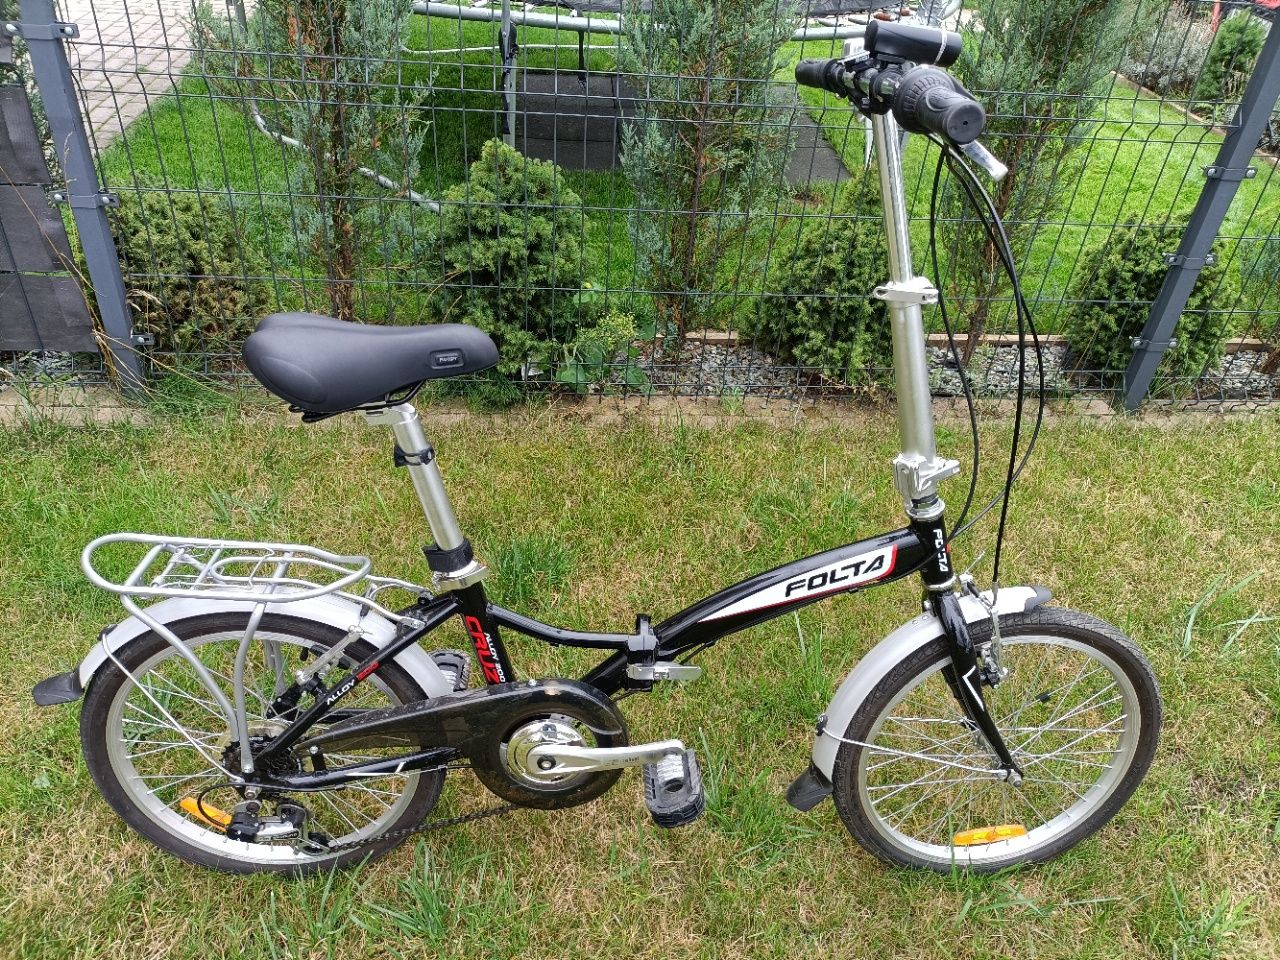 Rower składany polskiej firmy Folta - model Cruze